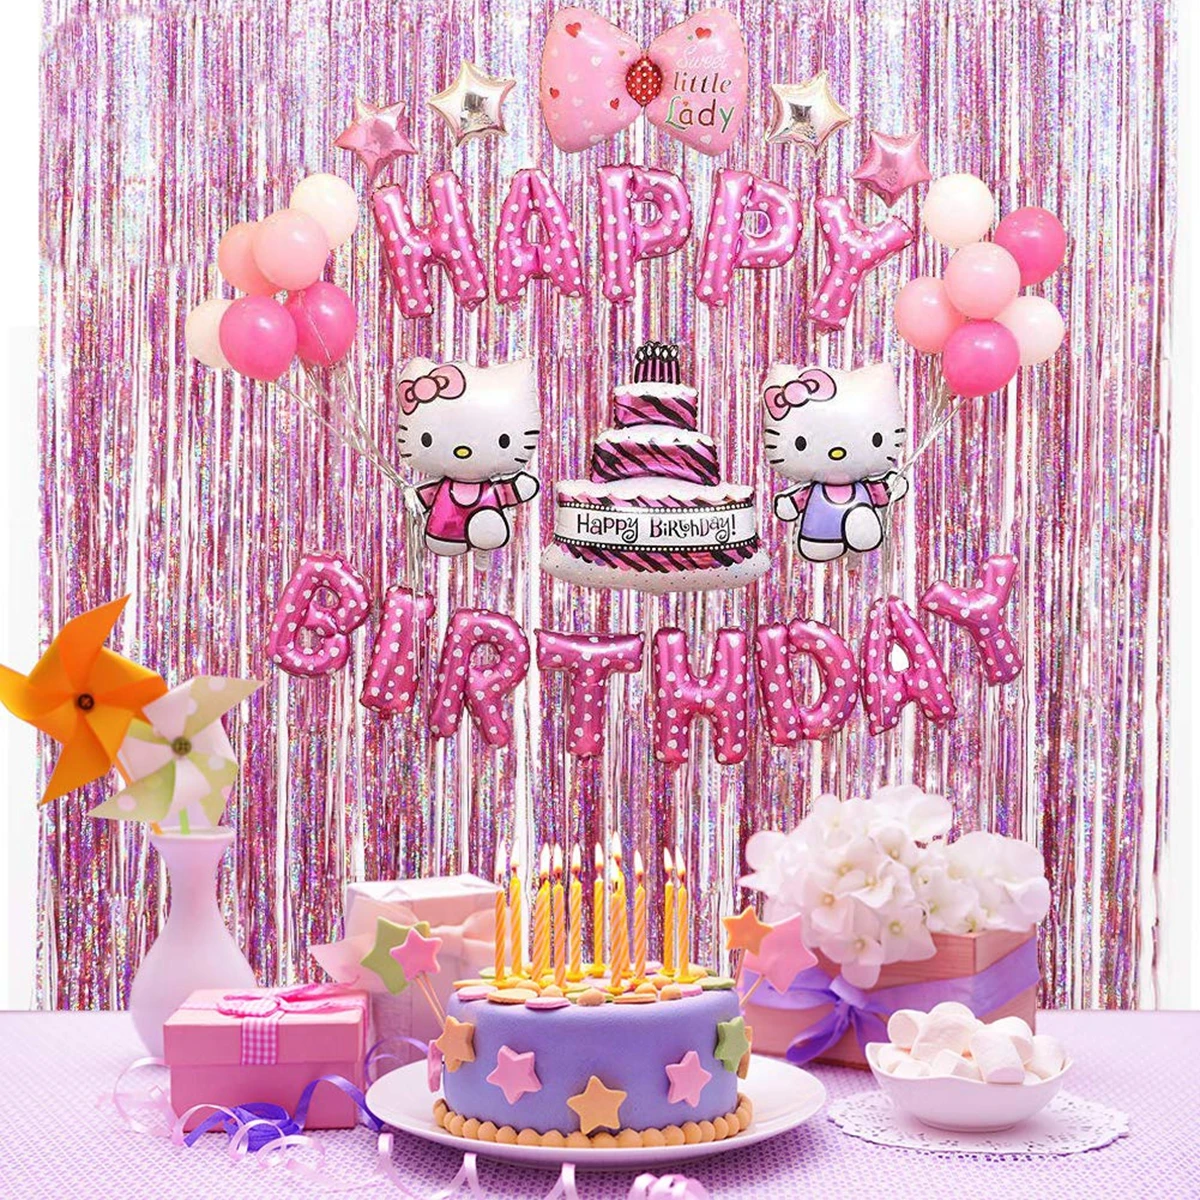 QIFU счастливый фон на день рождения фотография розовая стена свадьба фон для фотографии ребенок душ товары для девичника